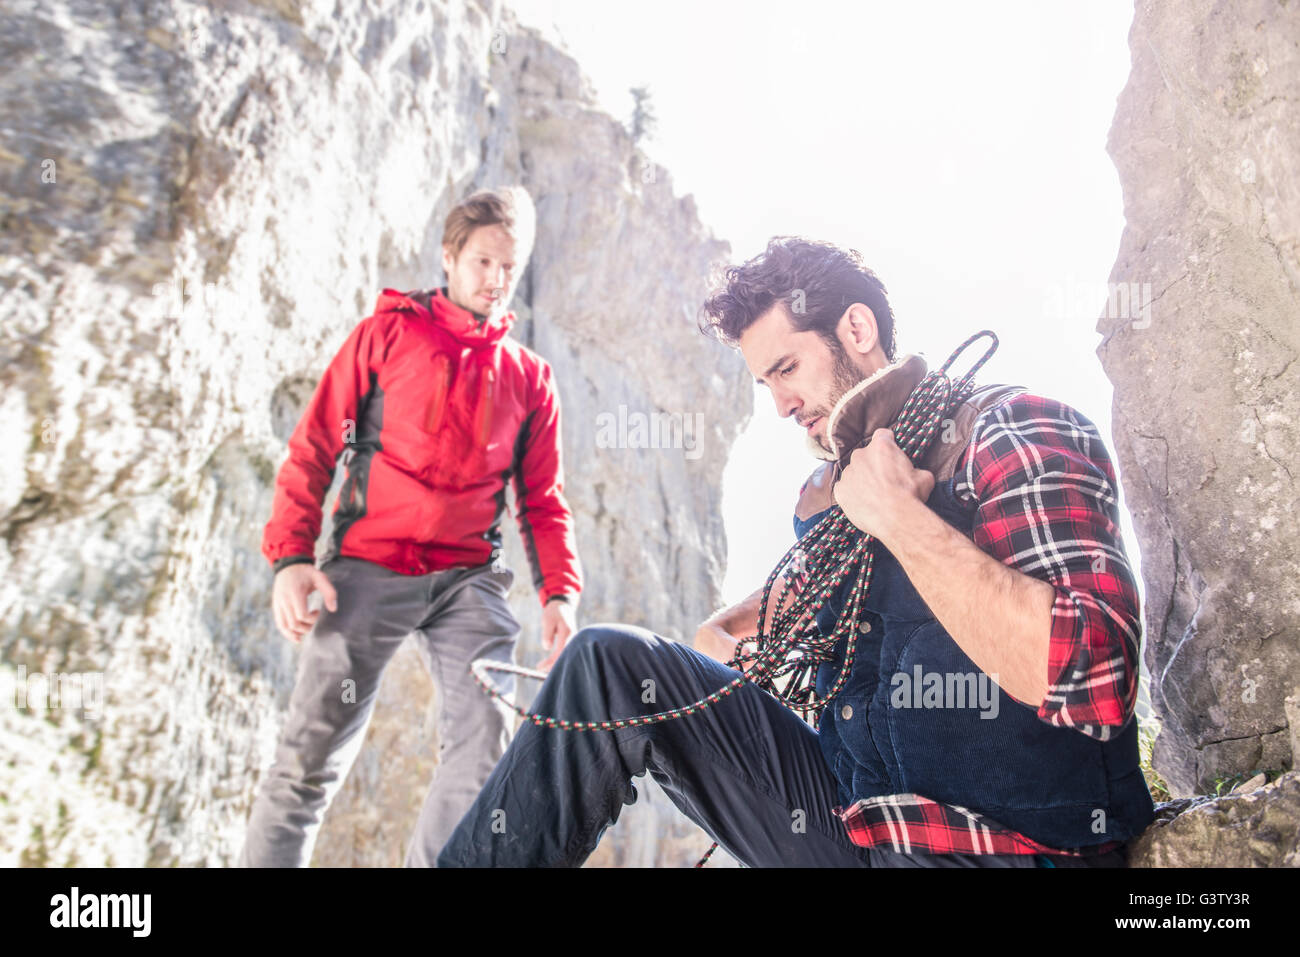 Deux alpinistes se reposer pendant une montée en terrain difficile. Banque D'Images